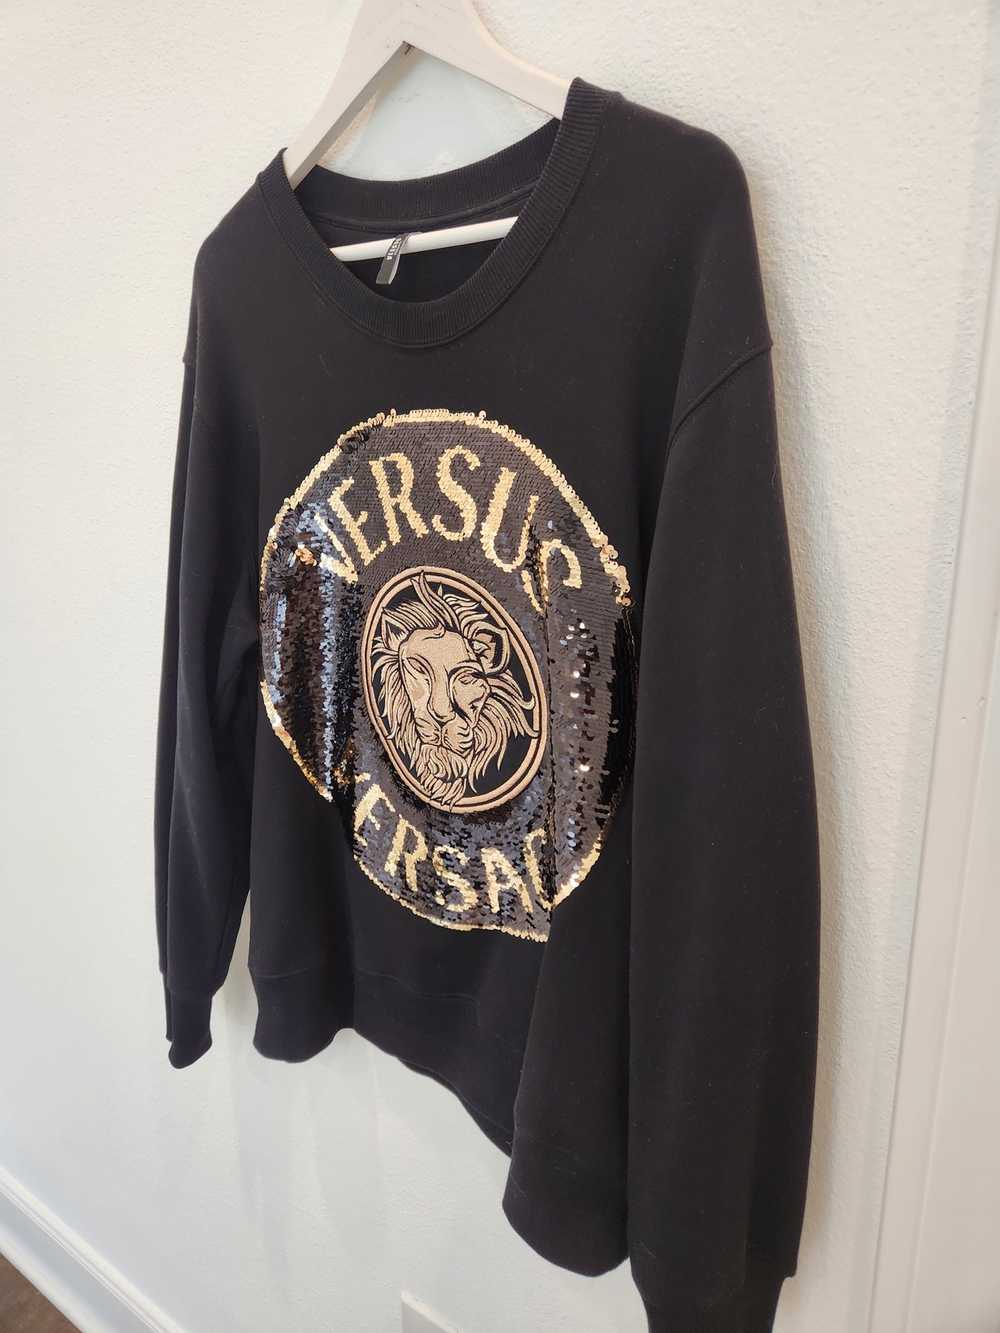 Versus Versace Versus Versace Sequin sweater - image 8